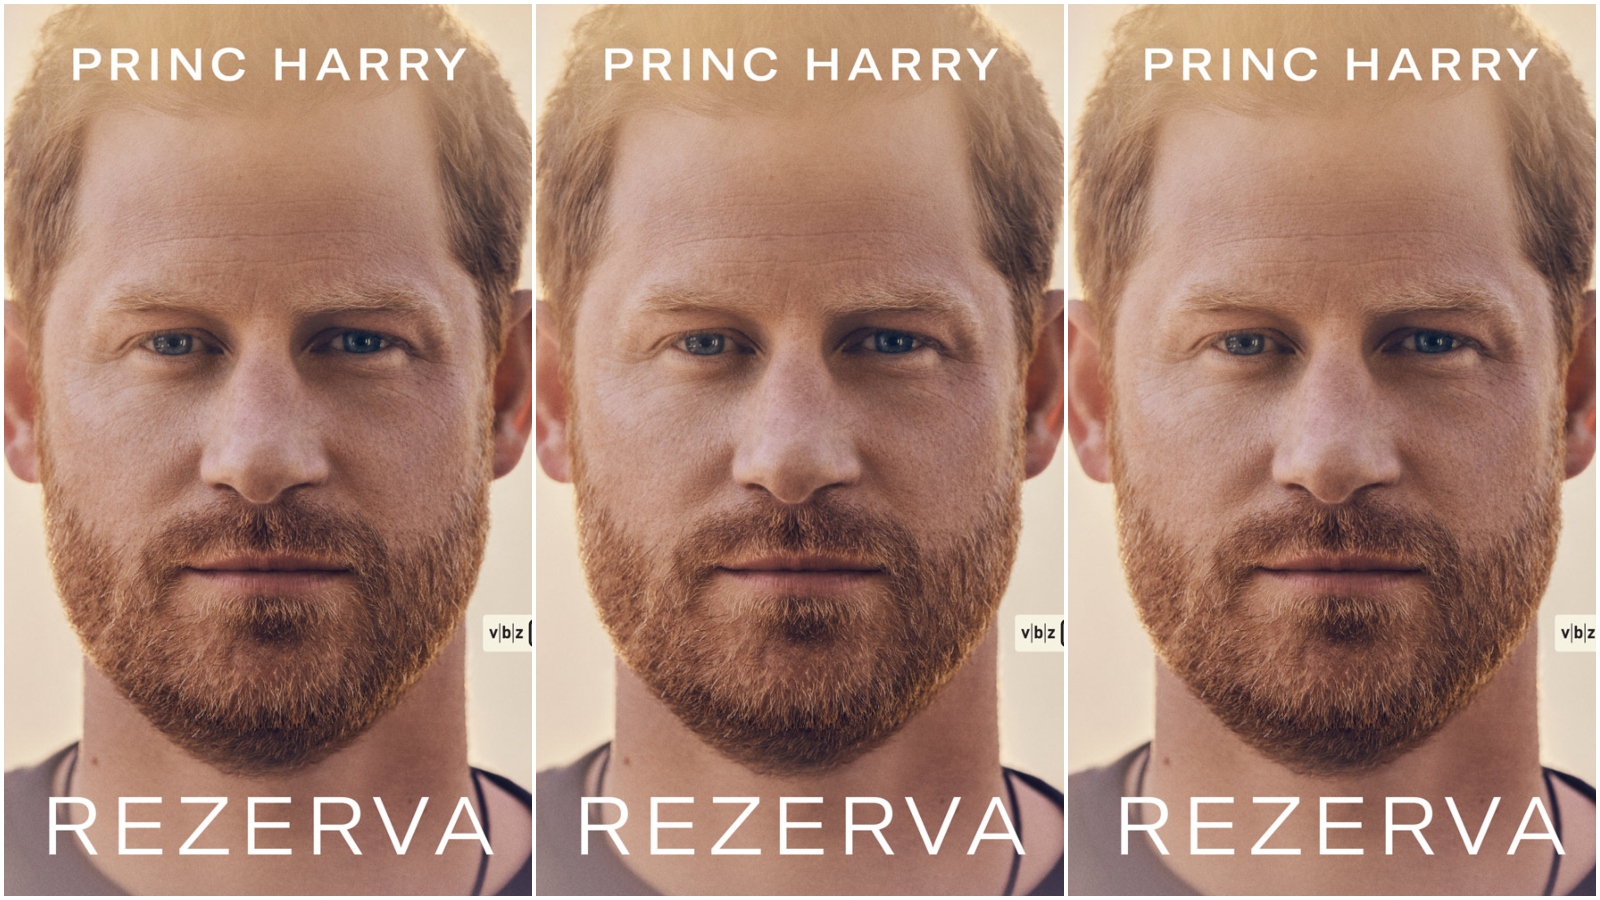 Stigla je Rezerva: Biografija princa Harryja dobila je hrvatski prijevod